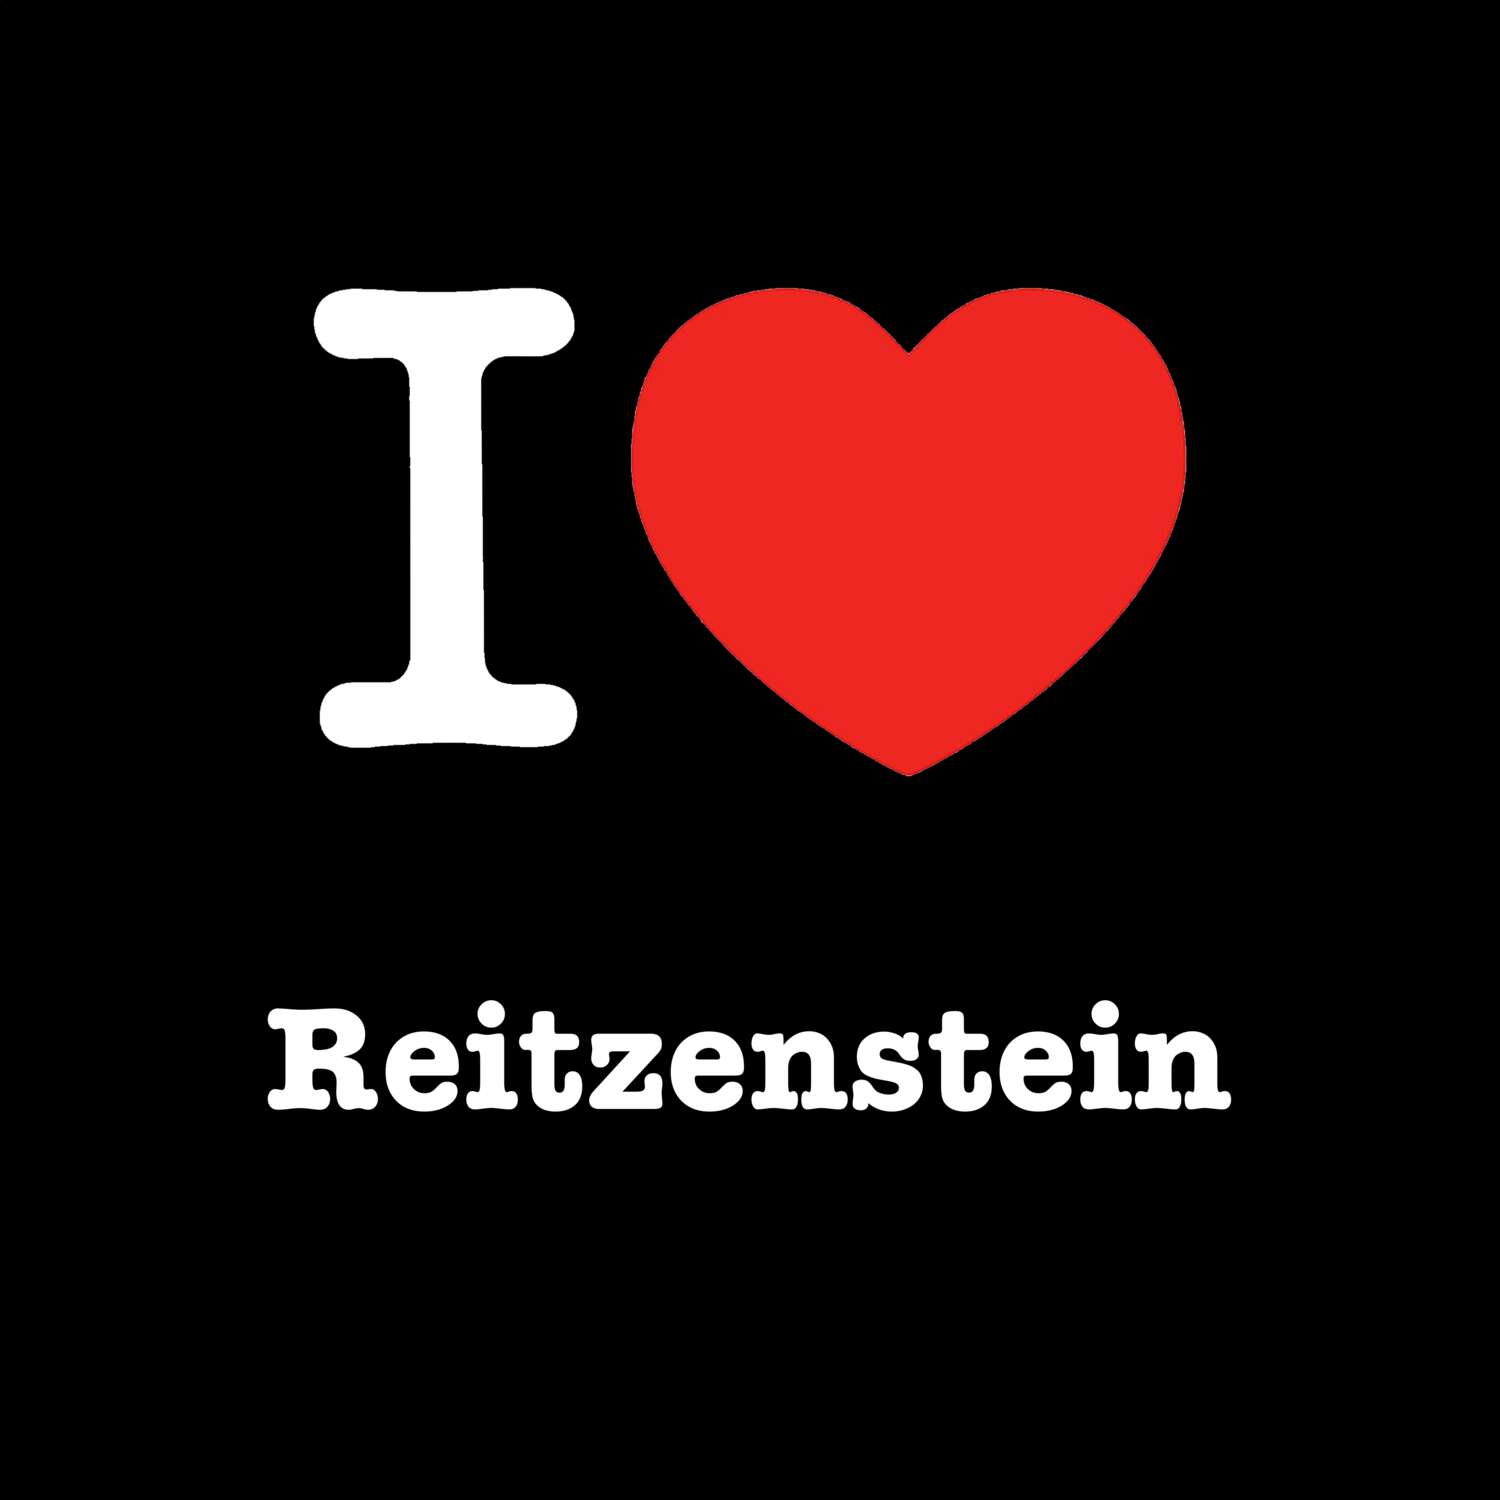 Reitzenstein T-Shirt »I love«